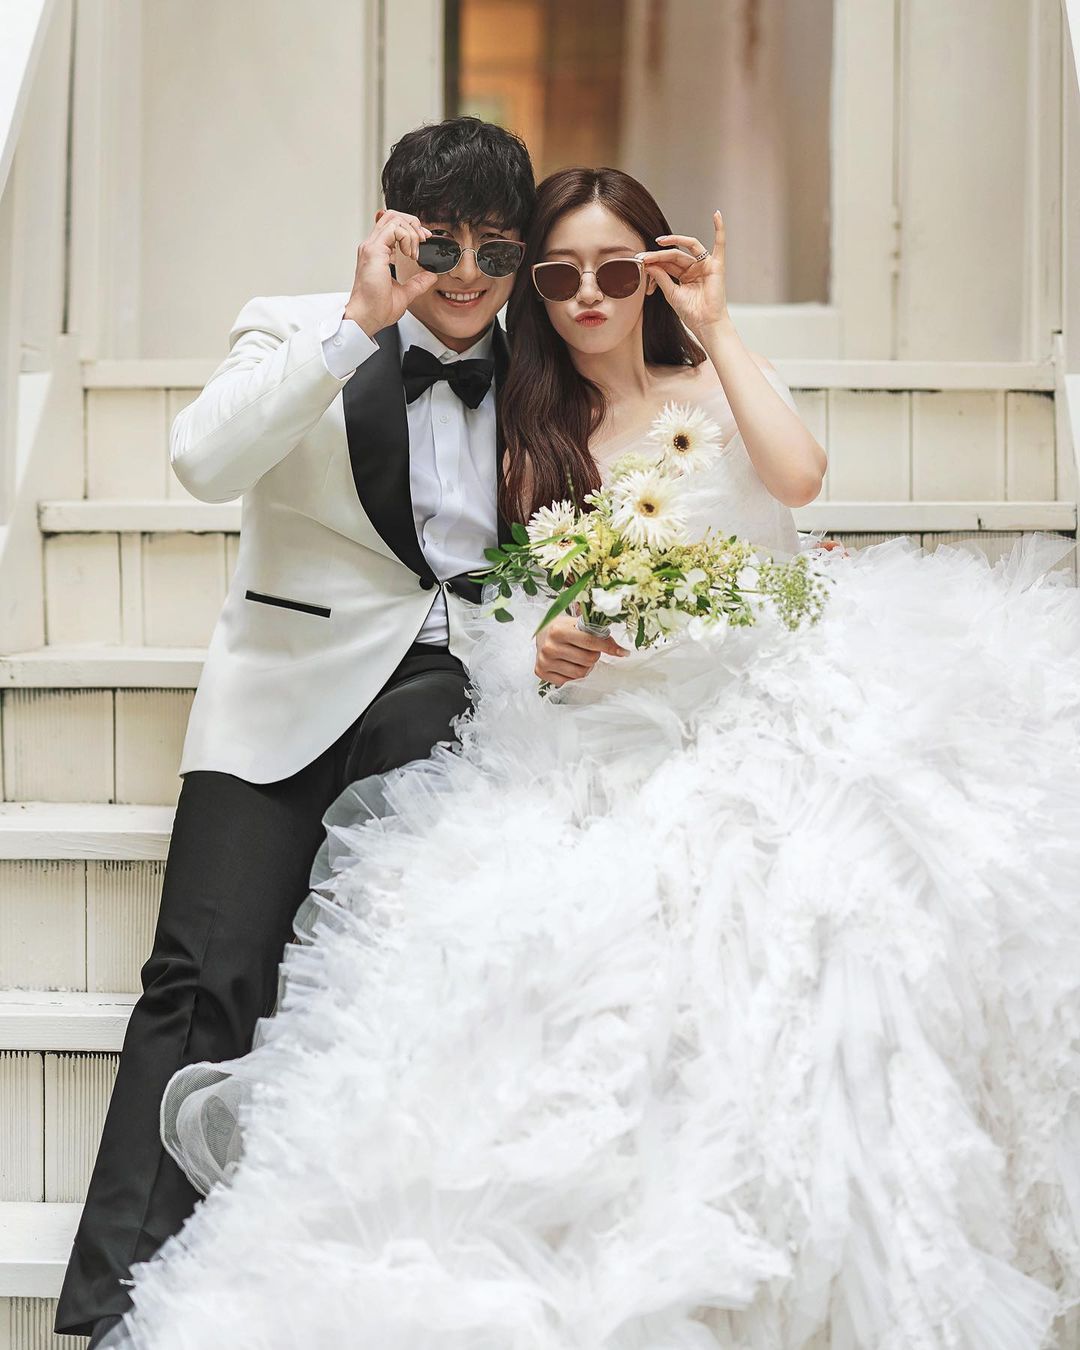 Jiyeon ảnh cưới: T-ara Jiyeon, cô nàng idol nổi tiếng, chọn một phong cách gợi cảm, sang trọng cho buổi chụp ảnh cưới của mình. Kiểu tóc đẹp, trang phục đẳng cấp và bó hoa tinh tế, đủ để làm bất kỳ ai cũng ngưỡng mộ. Hãy xem những bức ảnh tuyệt đẹp này để có nguồn cảm hứng cho ngày của bạn.